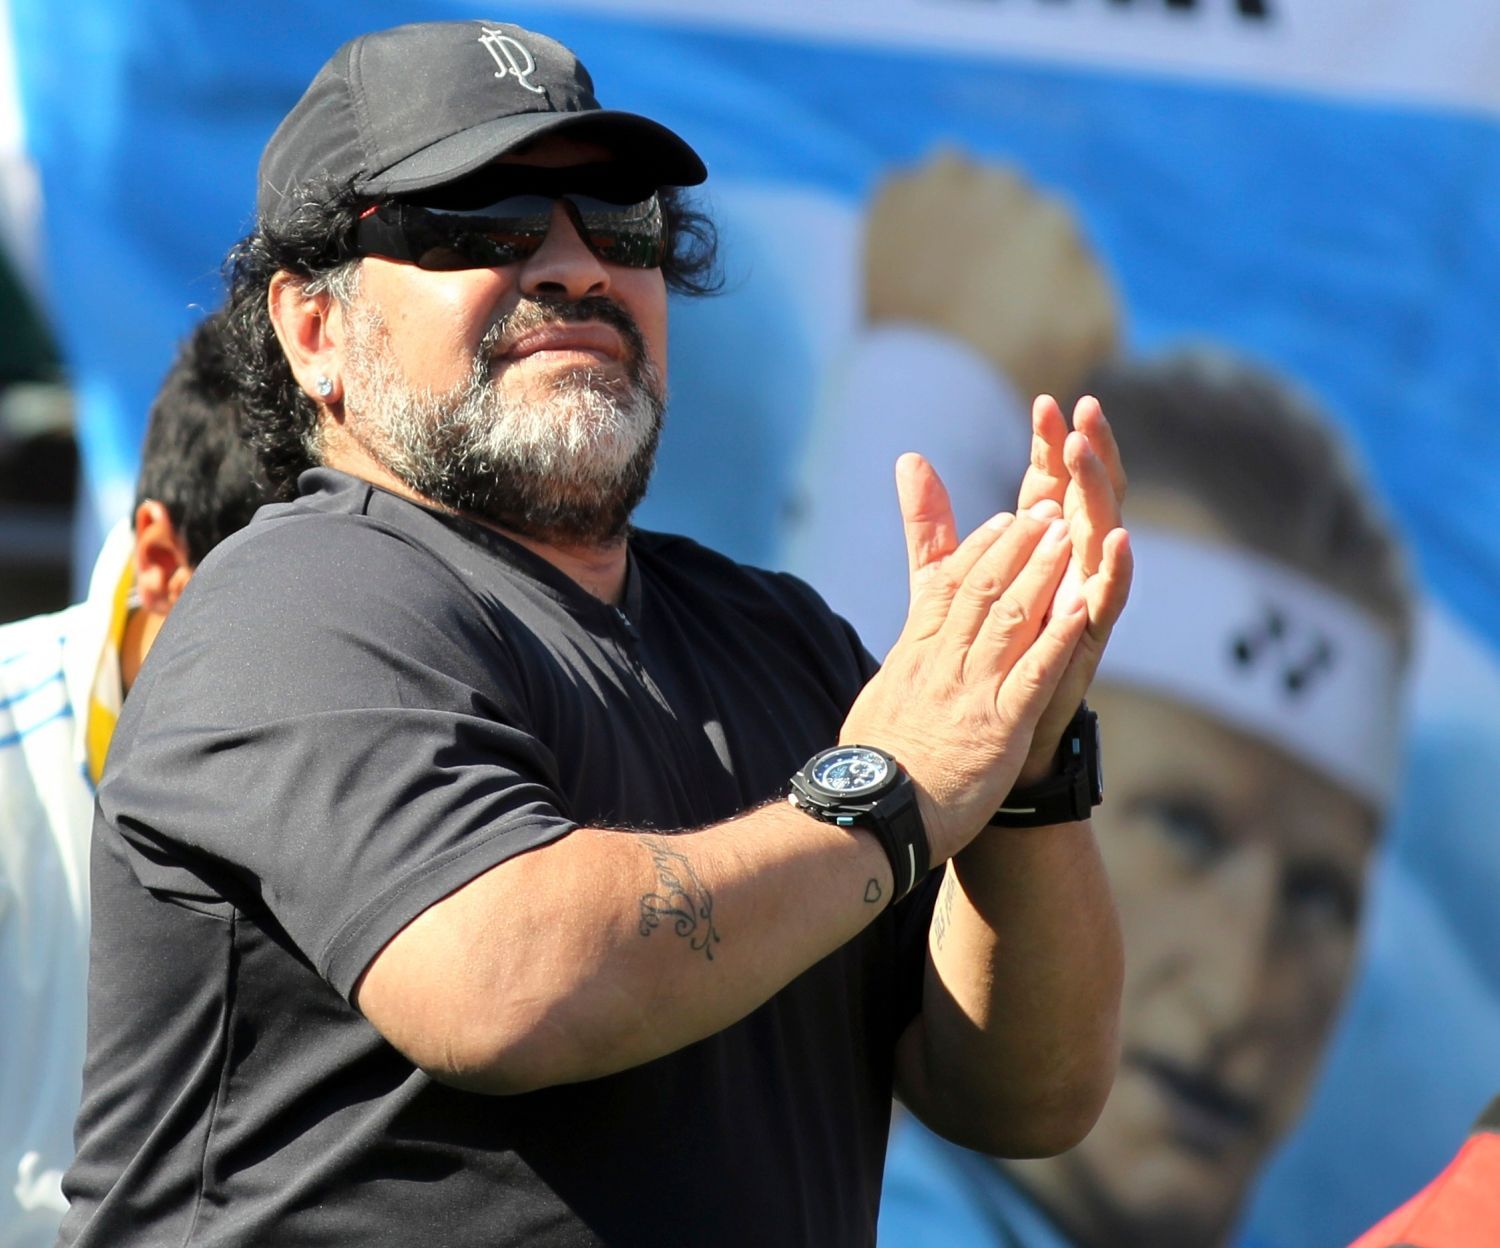 Argentinská fotbalová legenda Diego Maradona v semifinálovém utkání Davis Cupu 2012 Carlose Berlocqa s Čechem Tomášem Berdychem.